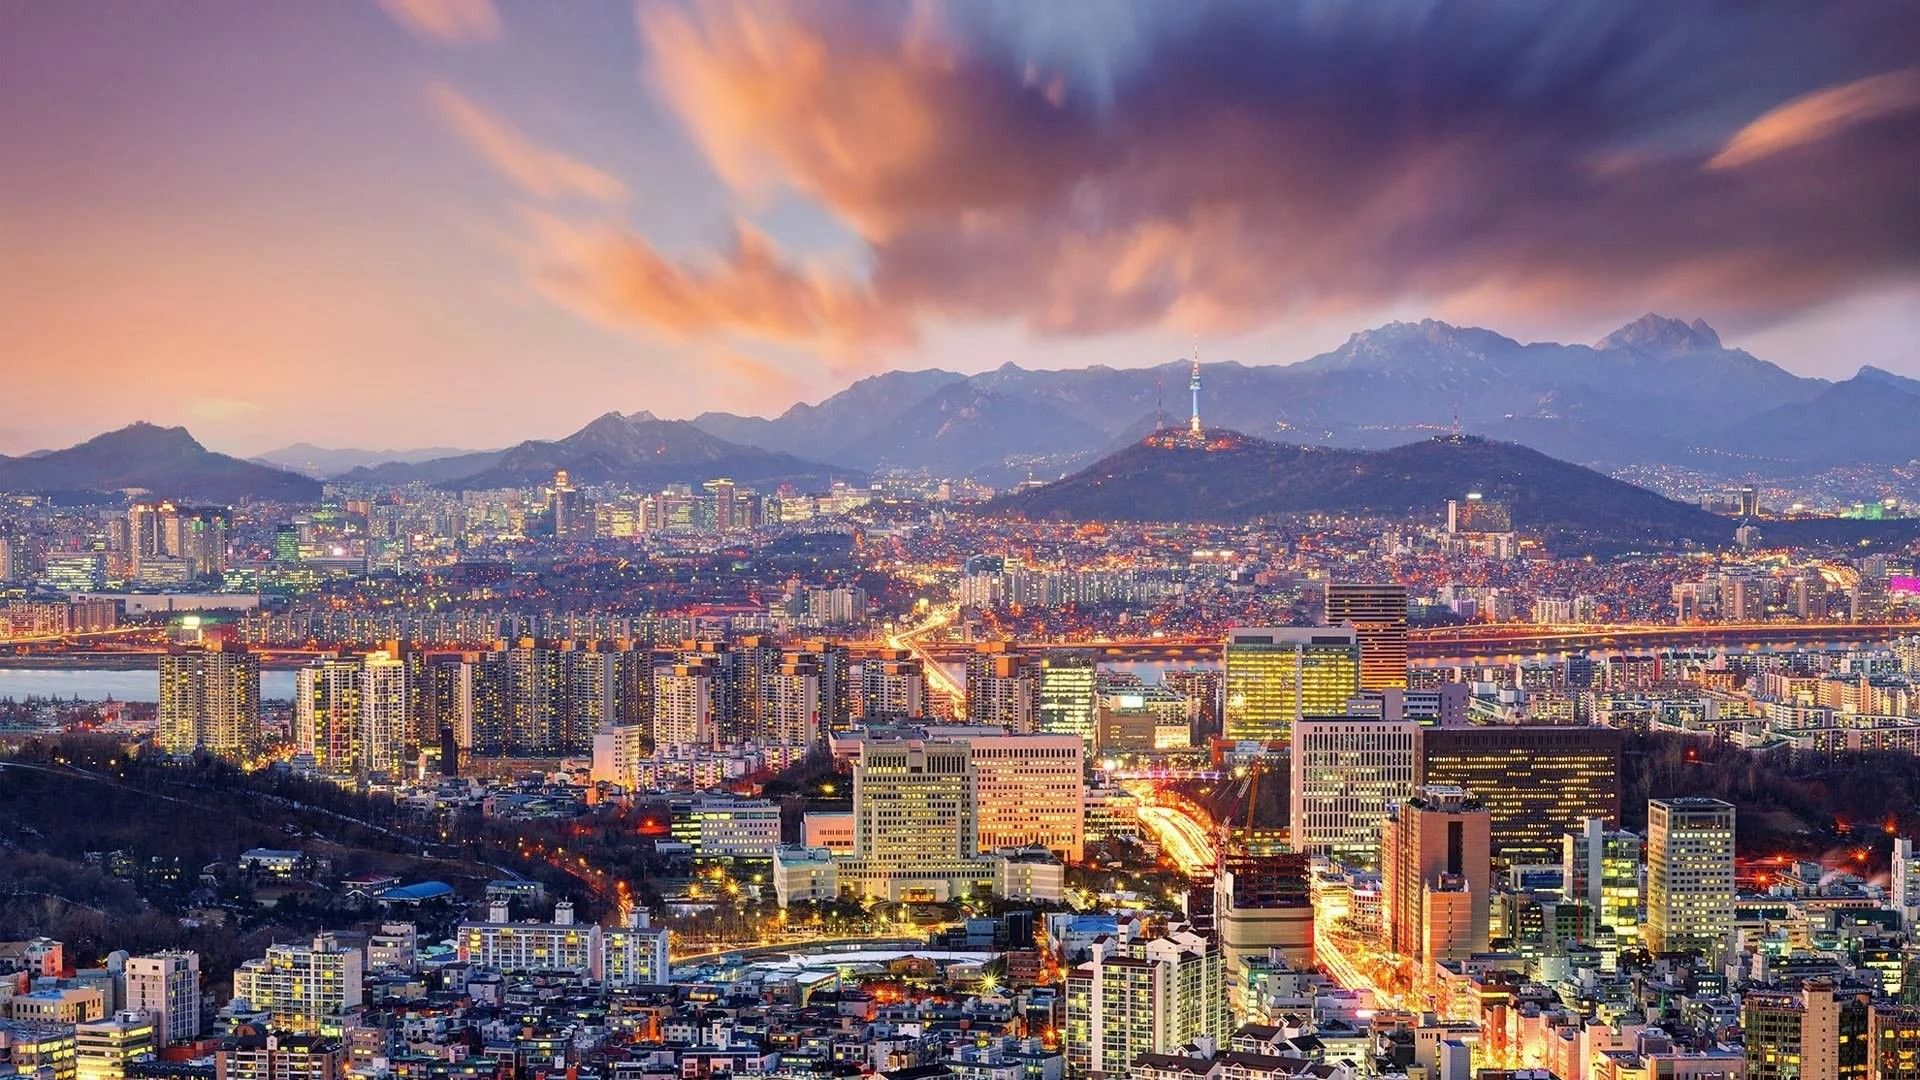 Hình nền Hàn Quốc - Nếu bạn yêu thích Hàn Quốc, hình nền sẽ mang đến cho bạn những giây phút thư giãn và cảm hứng. Hình ảnh được chọn lọc kỹ lưỡng về các thành phố như Seoul, Busan, Incheon hay các danh thắng nổi tiếng như Đảo Jeju, Điện Nemours và hơn thế nữa. Hãy tải xuống ngay để trang trí cho máy tính của bạn.